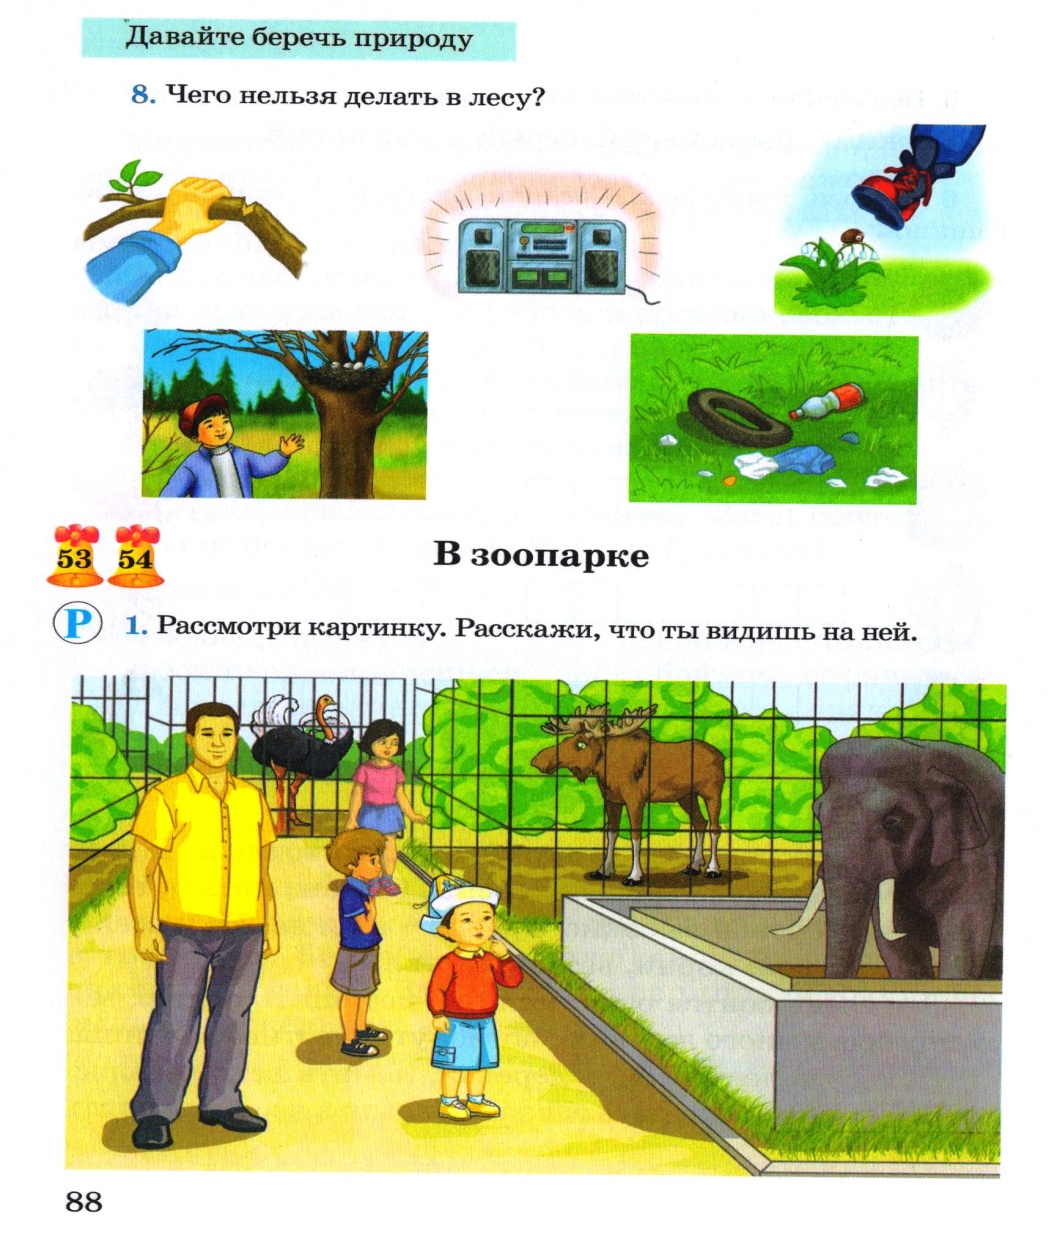 Тема урока ро русскому языку : В зоопарке. (объяснение нового материала ) 4 класс